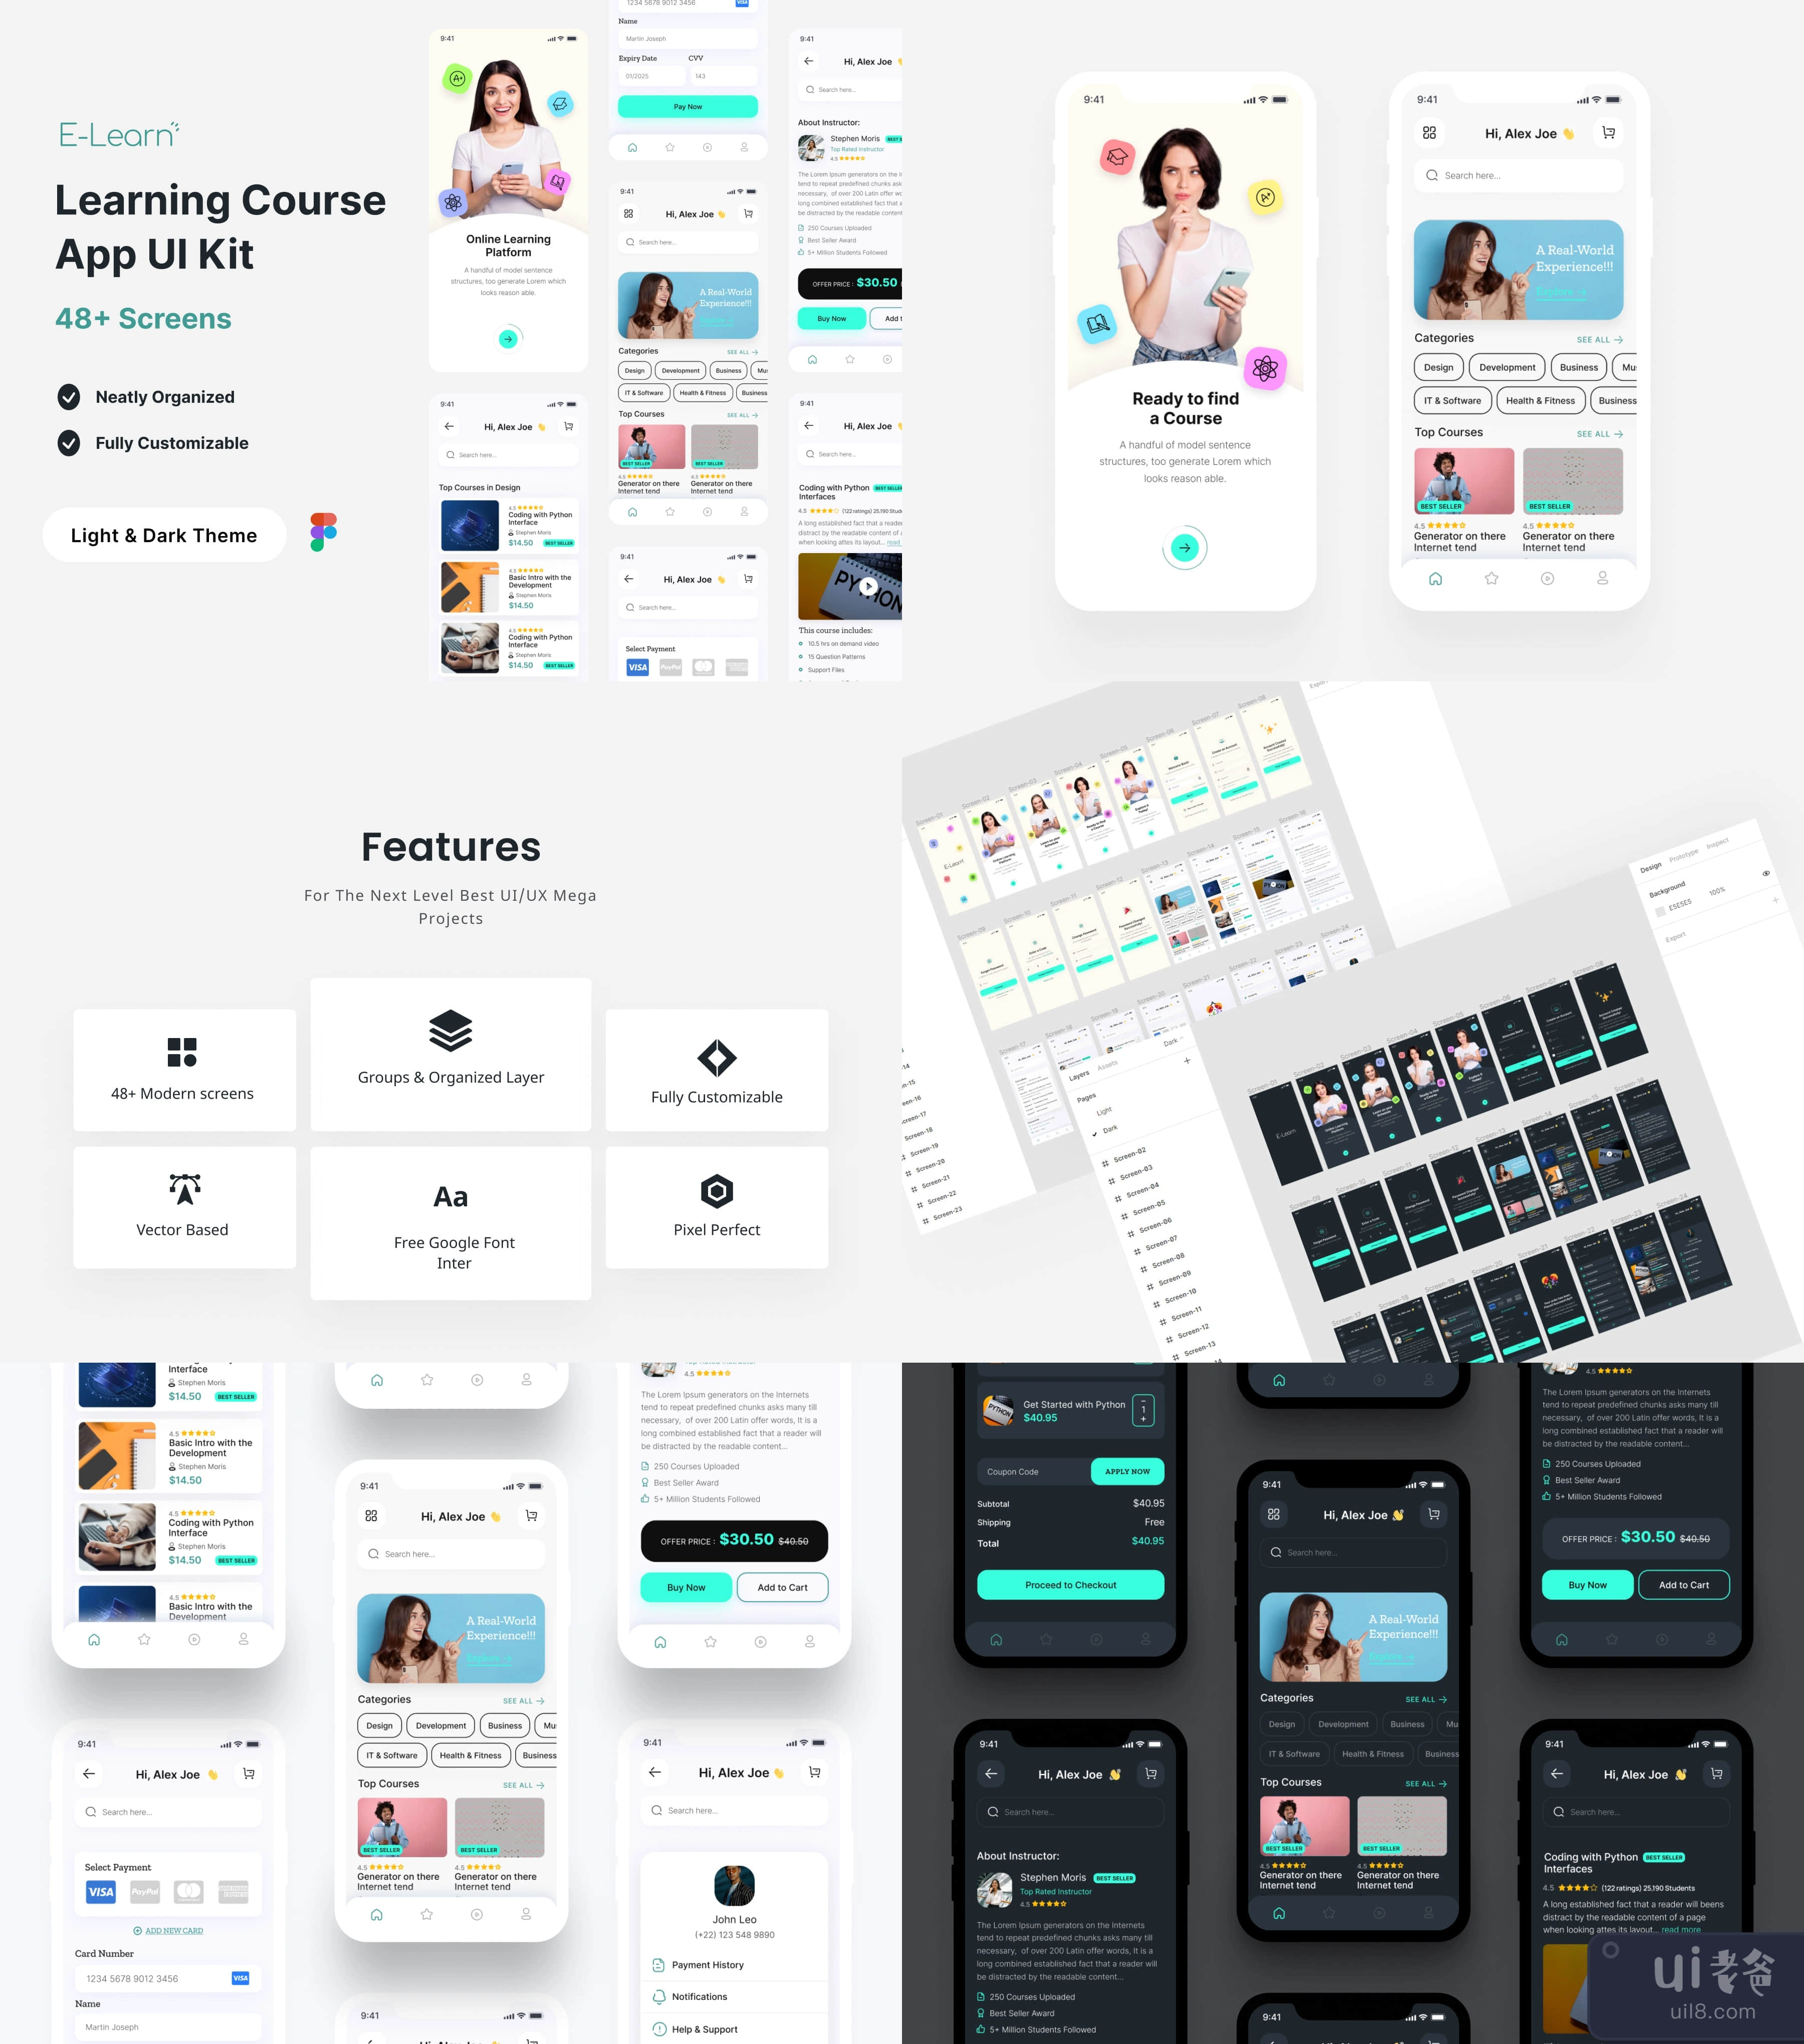 教育学习课程App UI Kit-E-learn (Education Learning Course App UI Kit-E-learn)插图